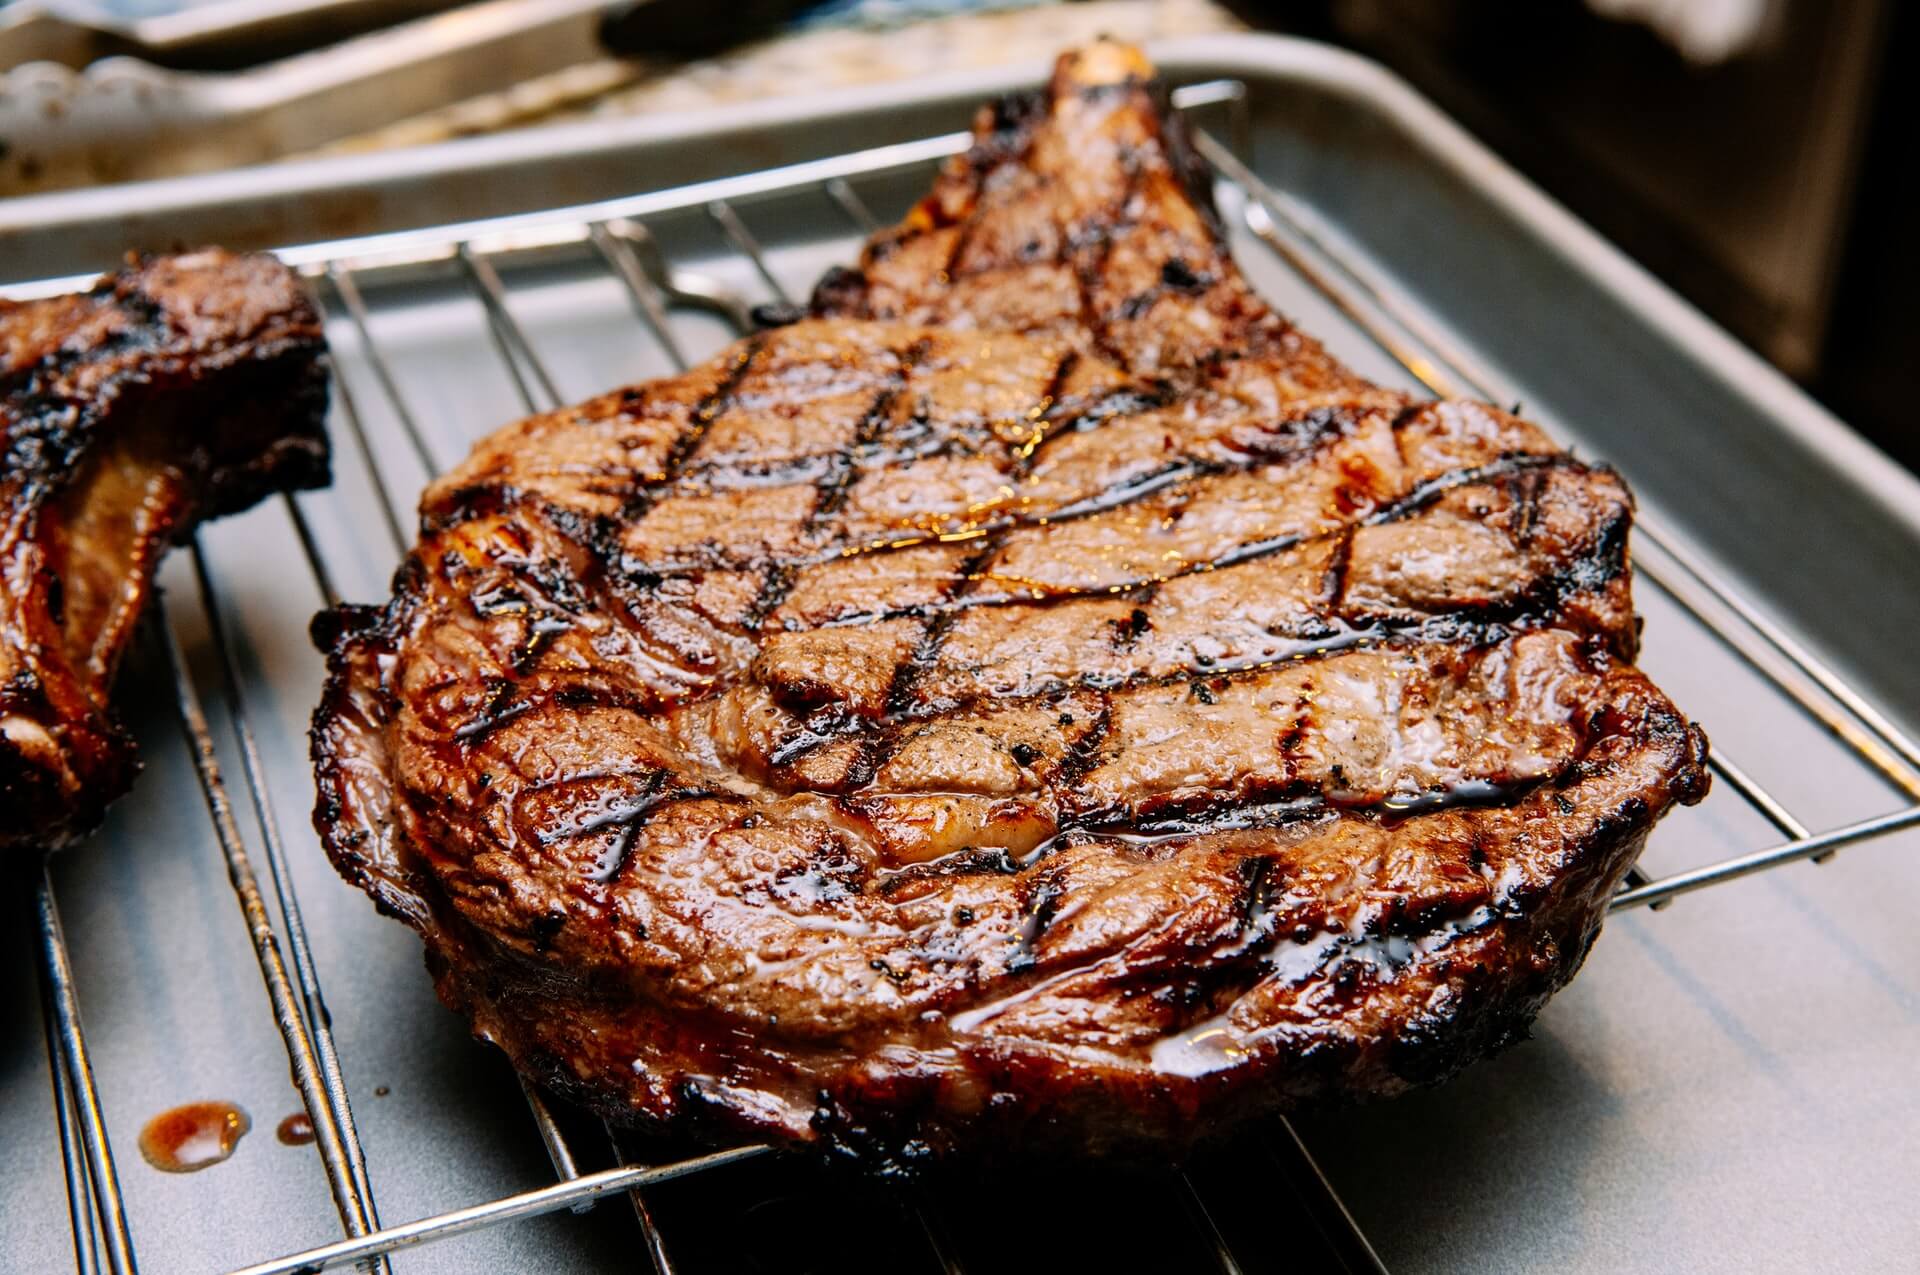 ᐅ Das perfekte Steak grillen mit dem Gasgrill - Wie gelingt es?